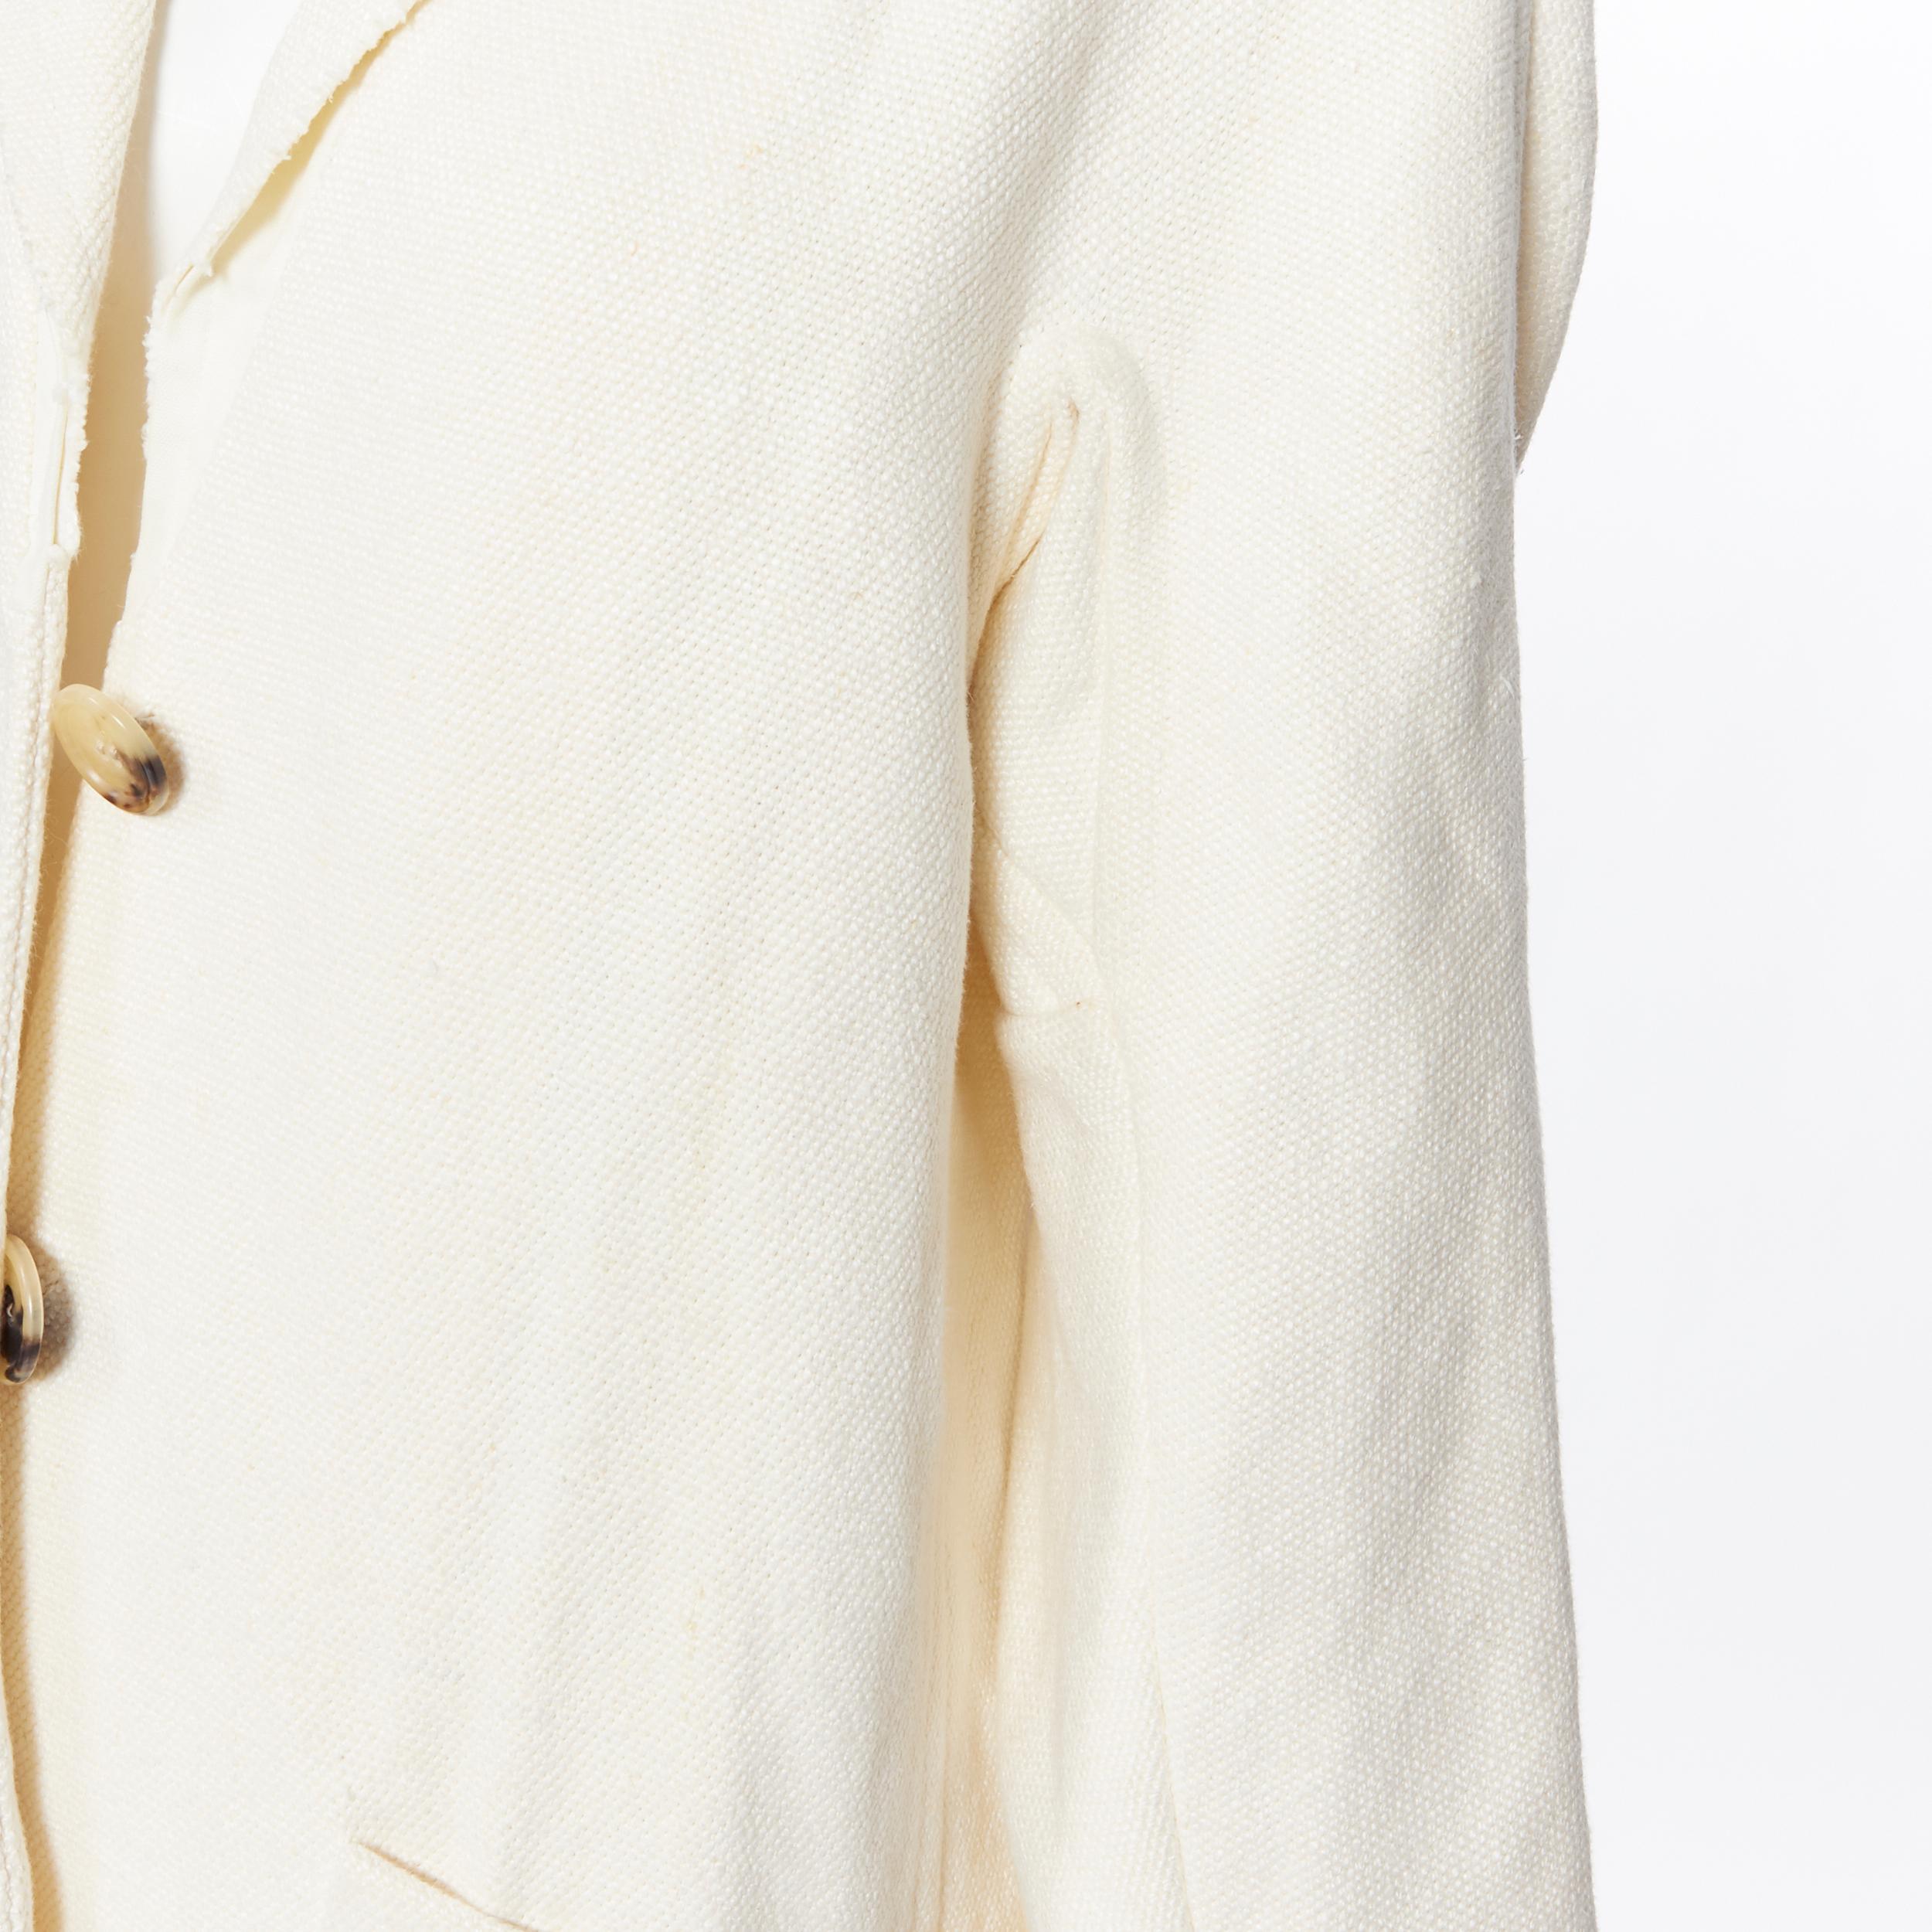 OLD CELINE PHOEBE PHILO 100% linen raw frayed hem beige cocoon coat jacket FR34 1